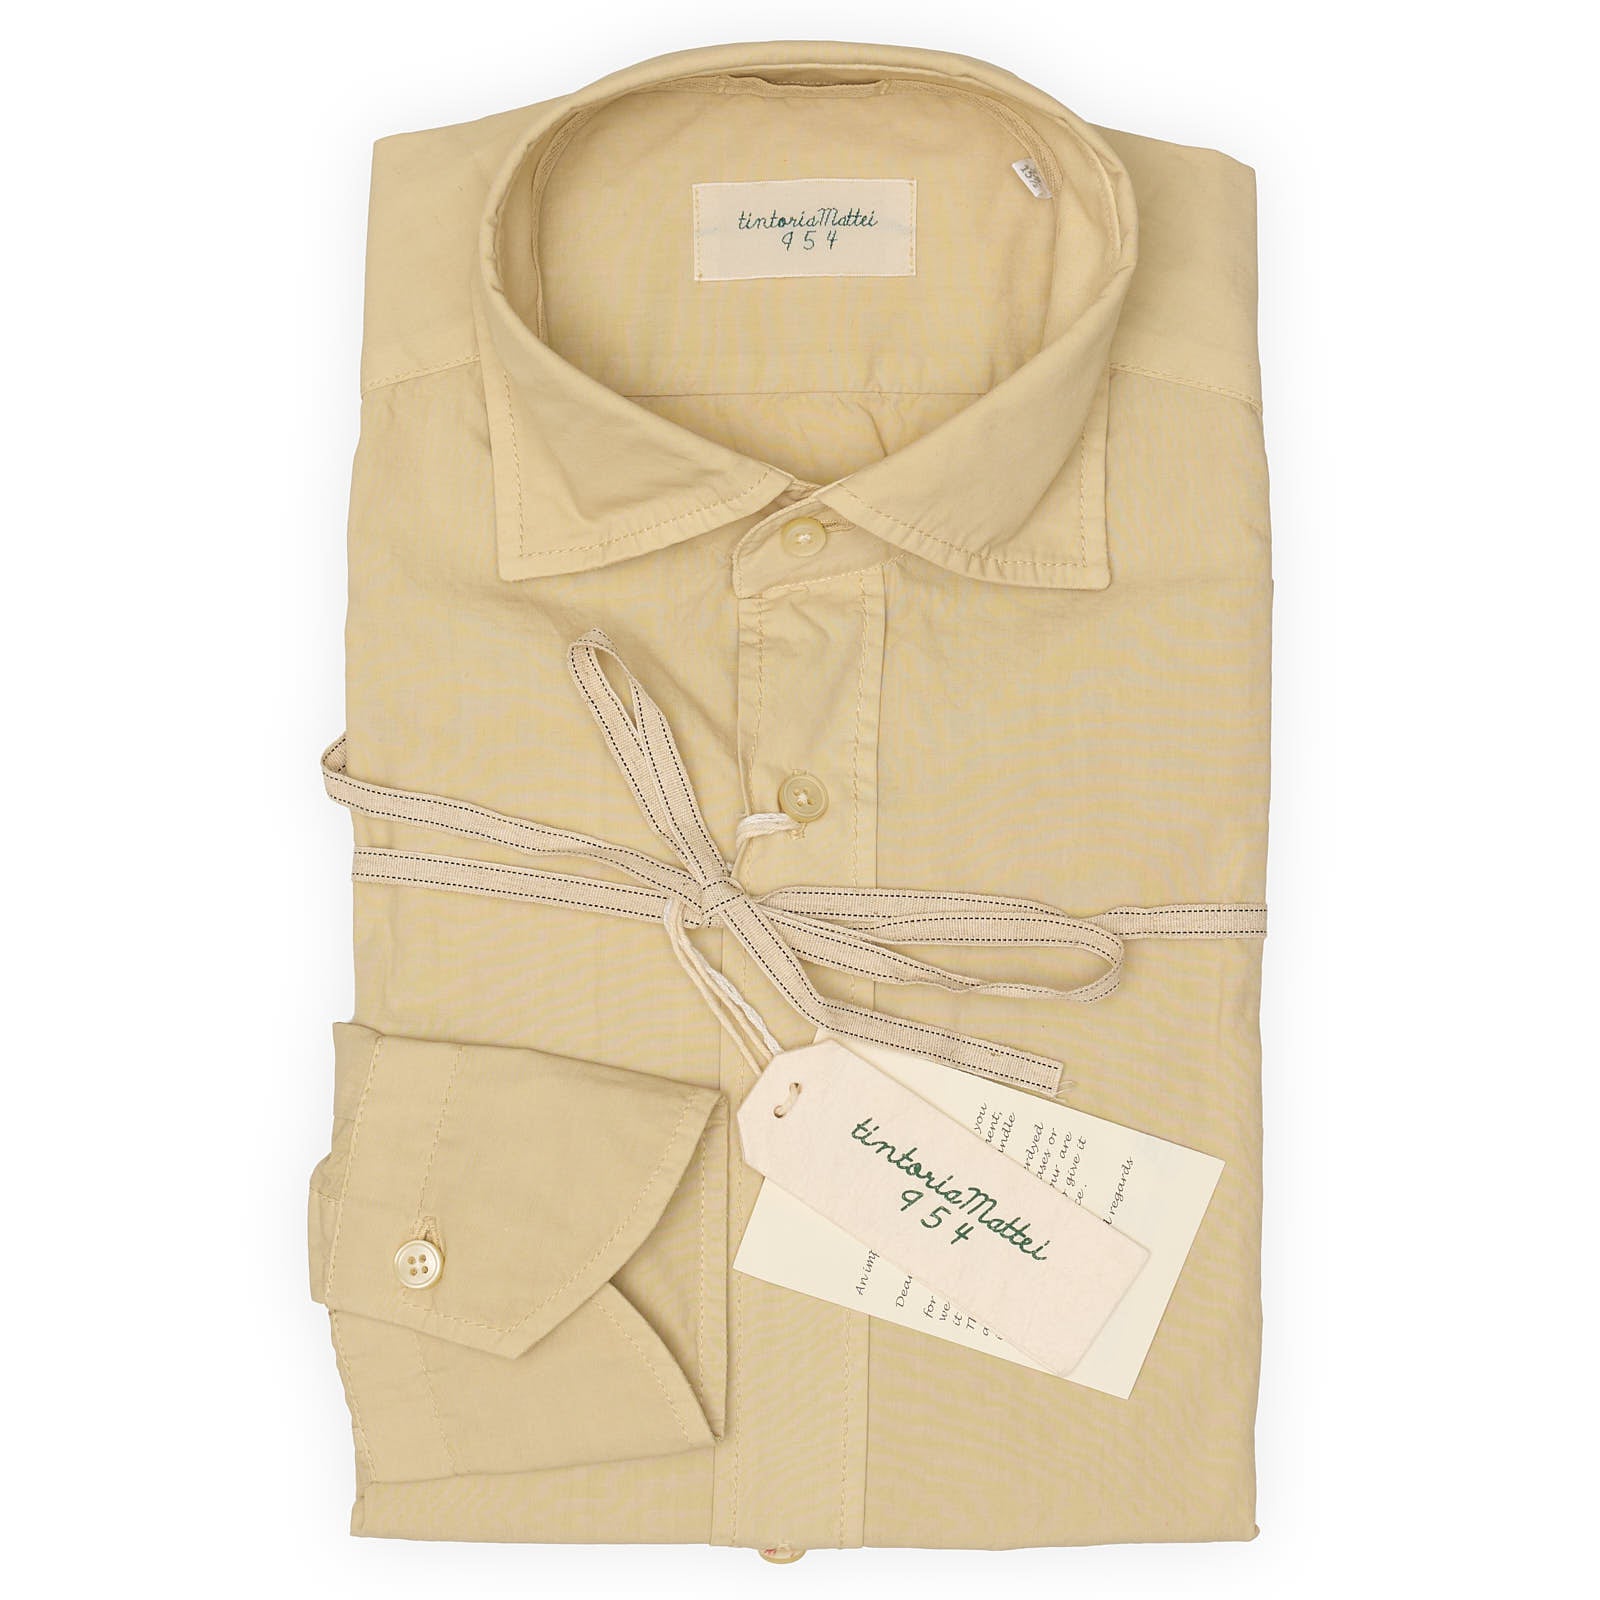 TINTORIA MATTEI 954 Tan Poplin Cotton Dress Shirt NEW